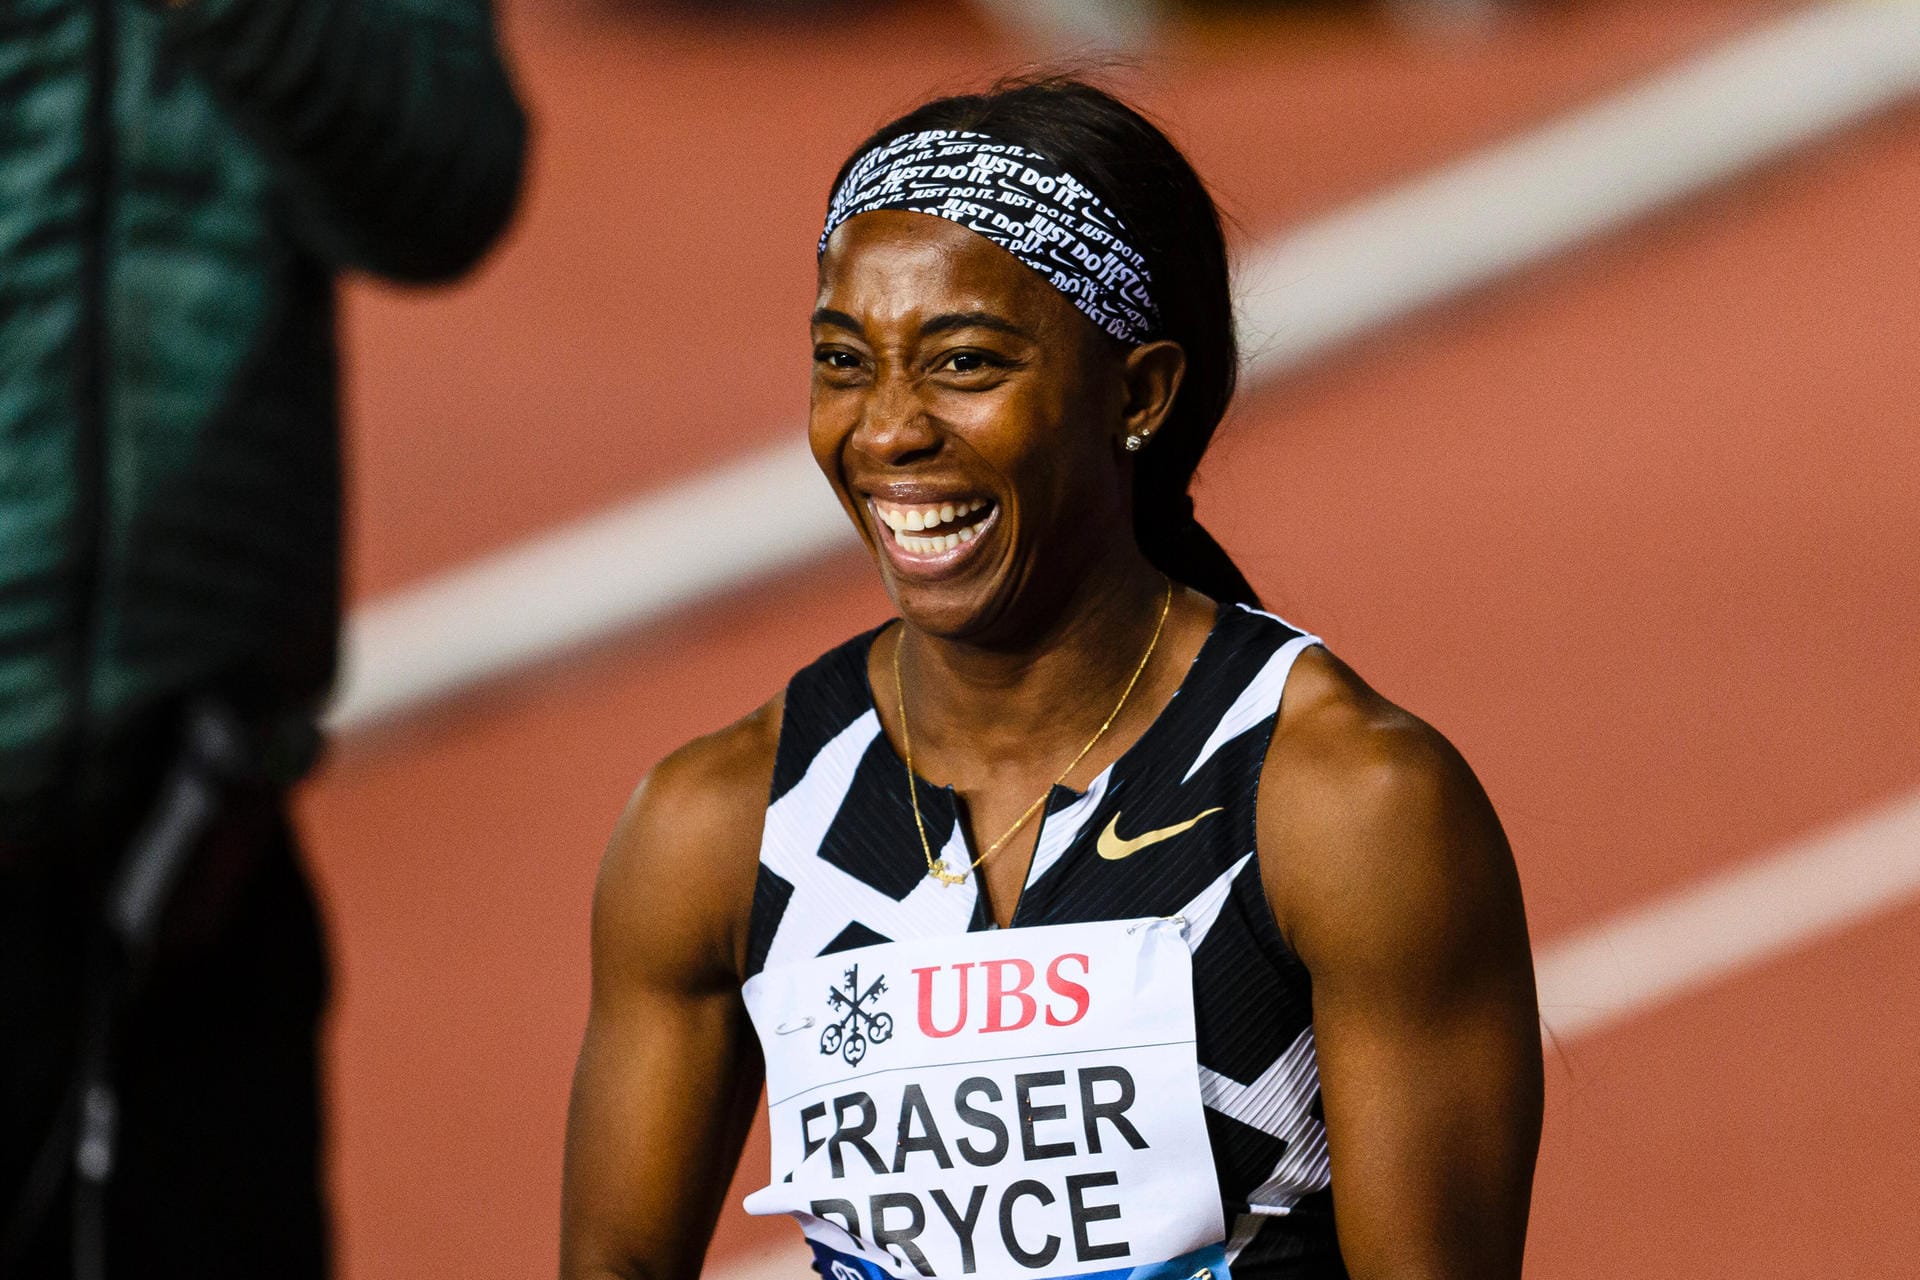 Shelly-Ann Fraser-Pryce: Die jamaikanische Sprinter bekam 2017 ihren Sohn und wurde Mutter. In diesem Jahr wurde sie bei den Olympischen Spielen Zweite über die 100 Meter.